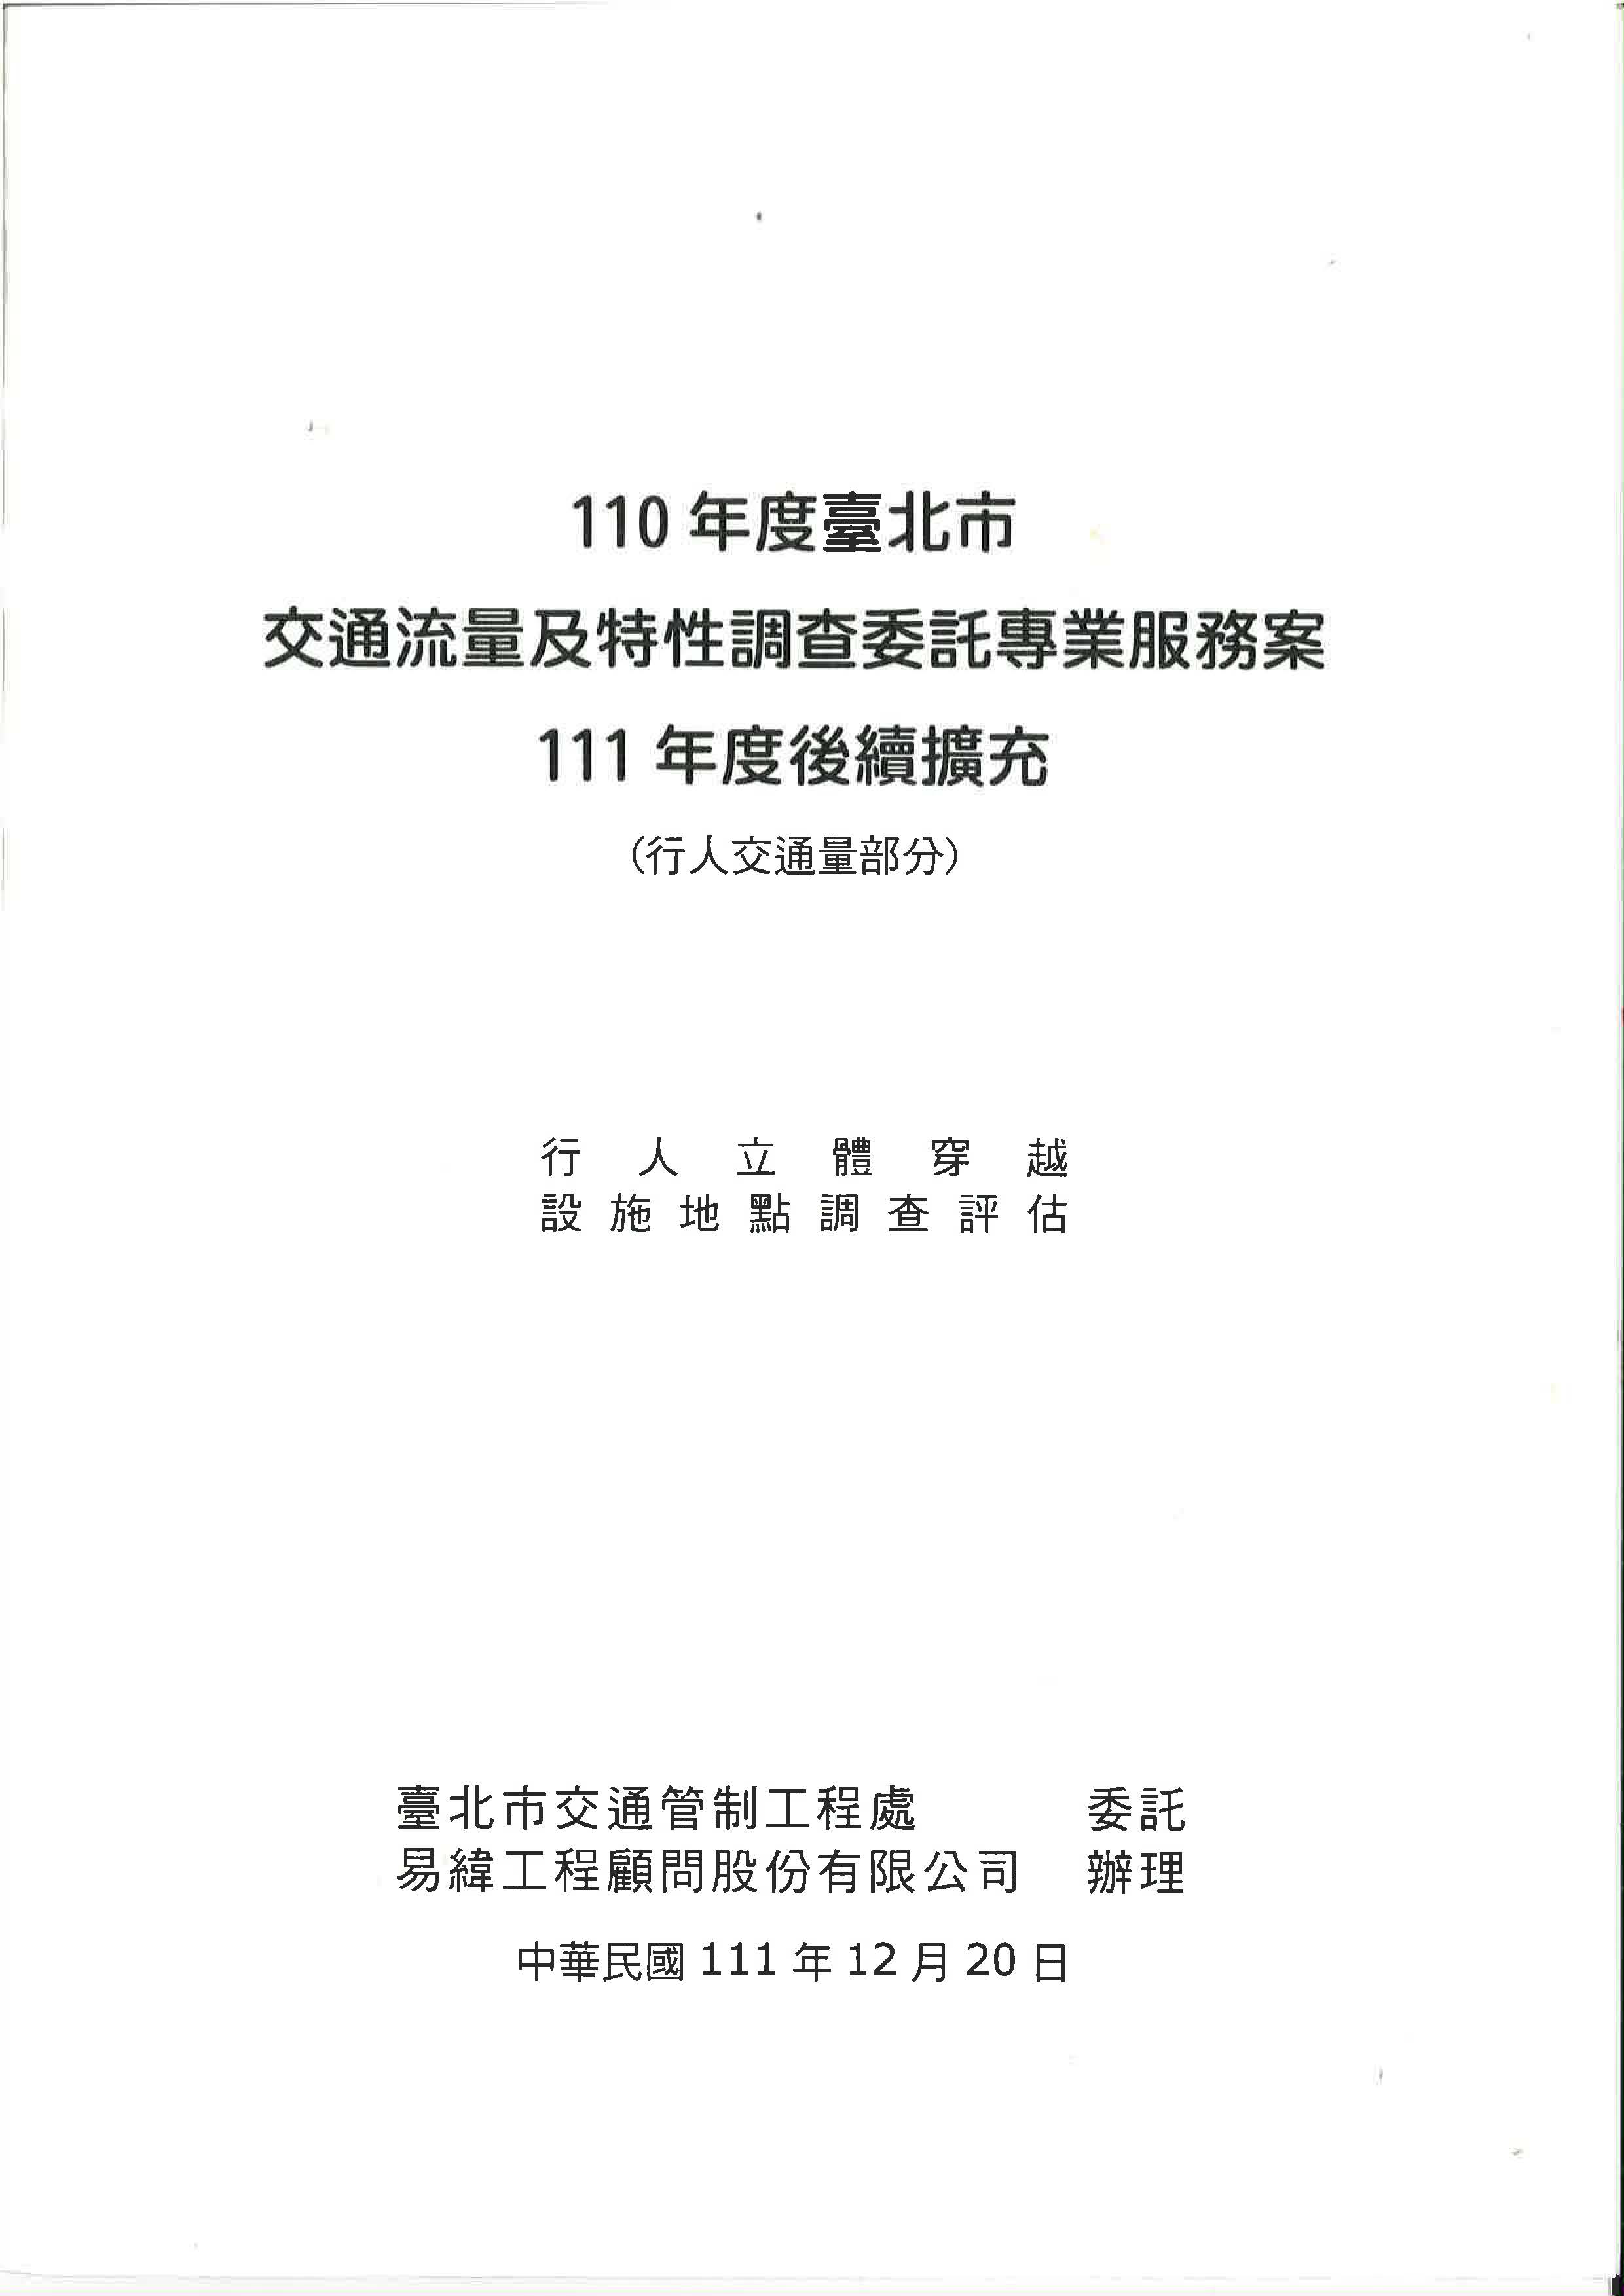 110年度臺北市交通流量及特性調查委託專業服務案-111年度後續擴充(行人交通量部分)